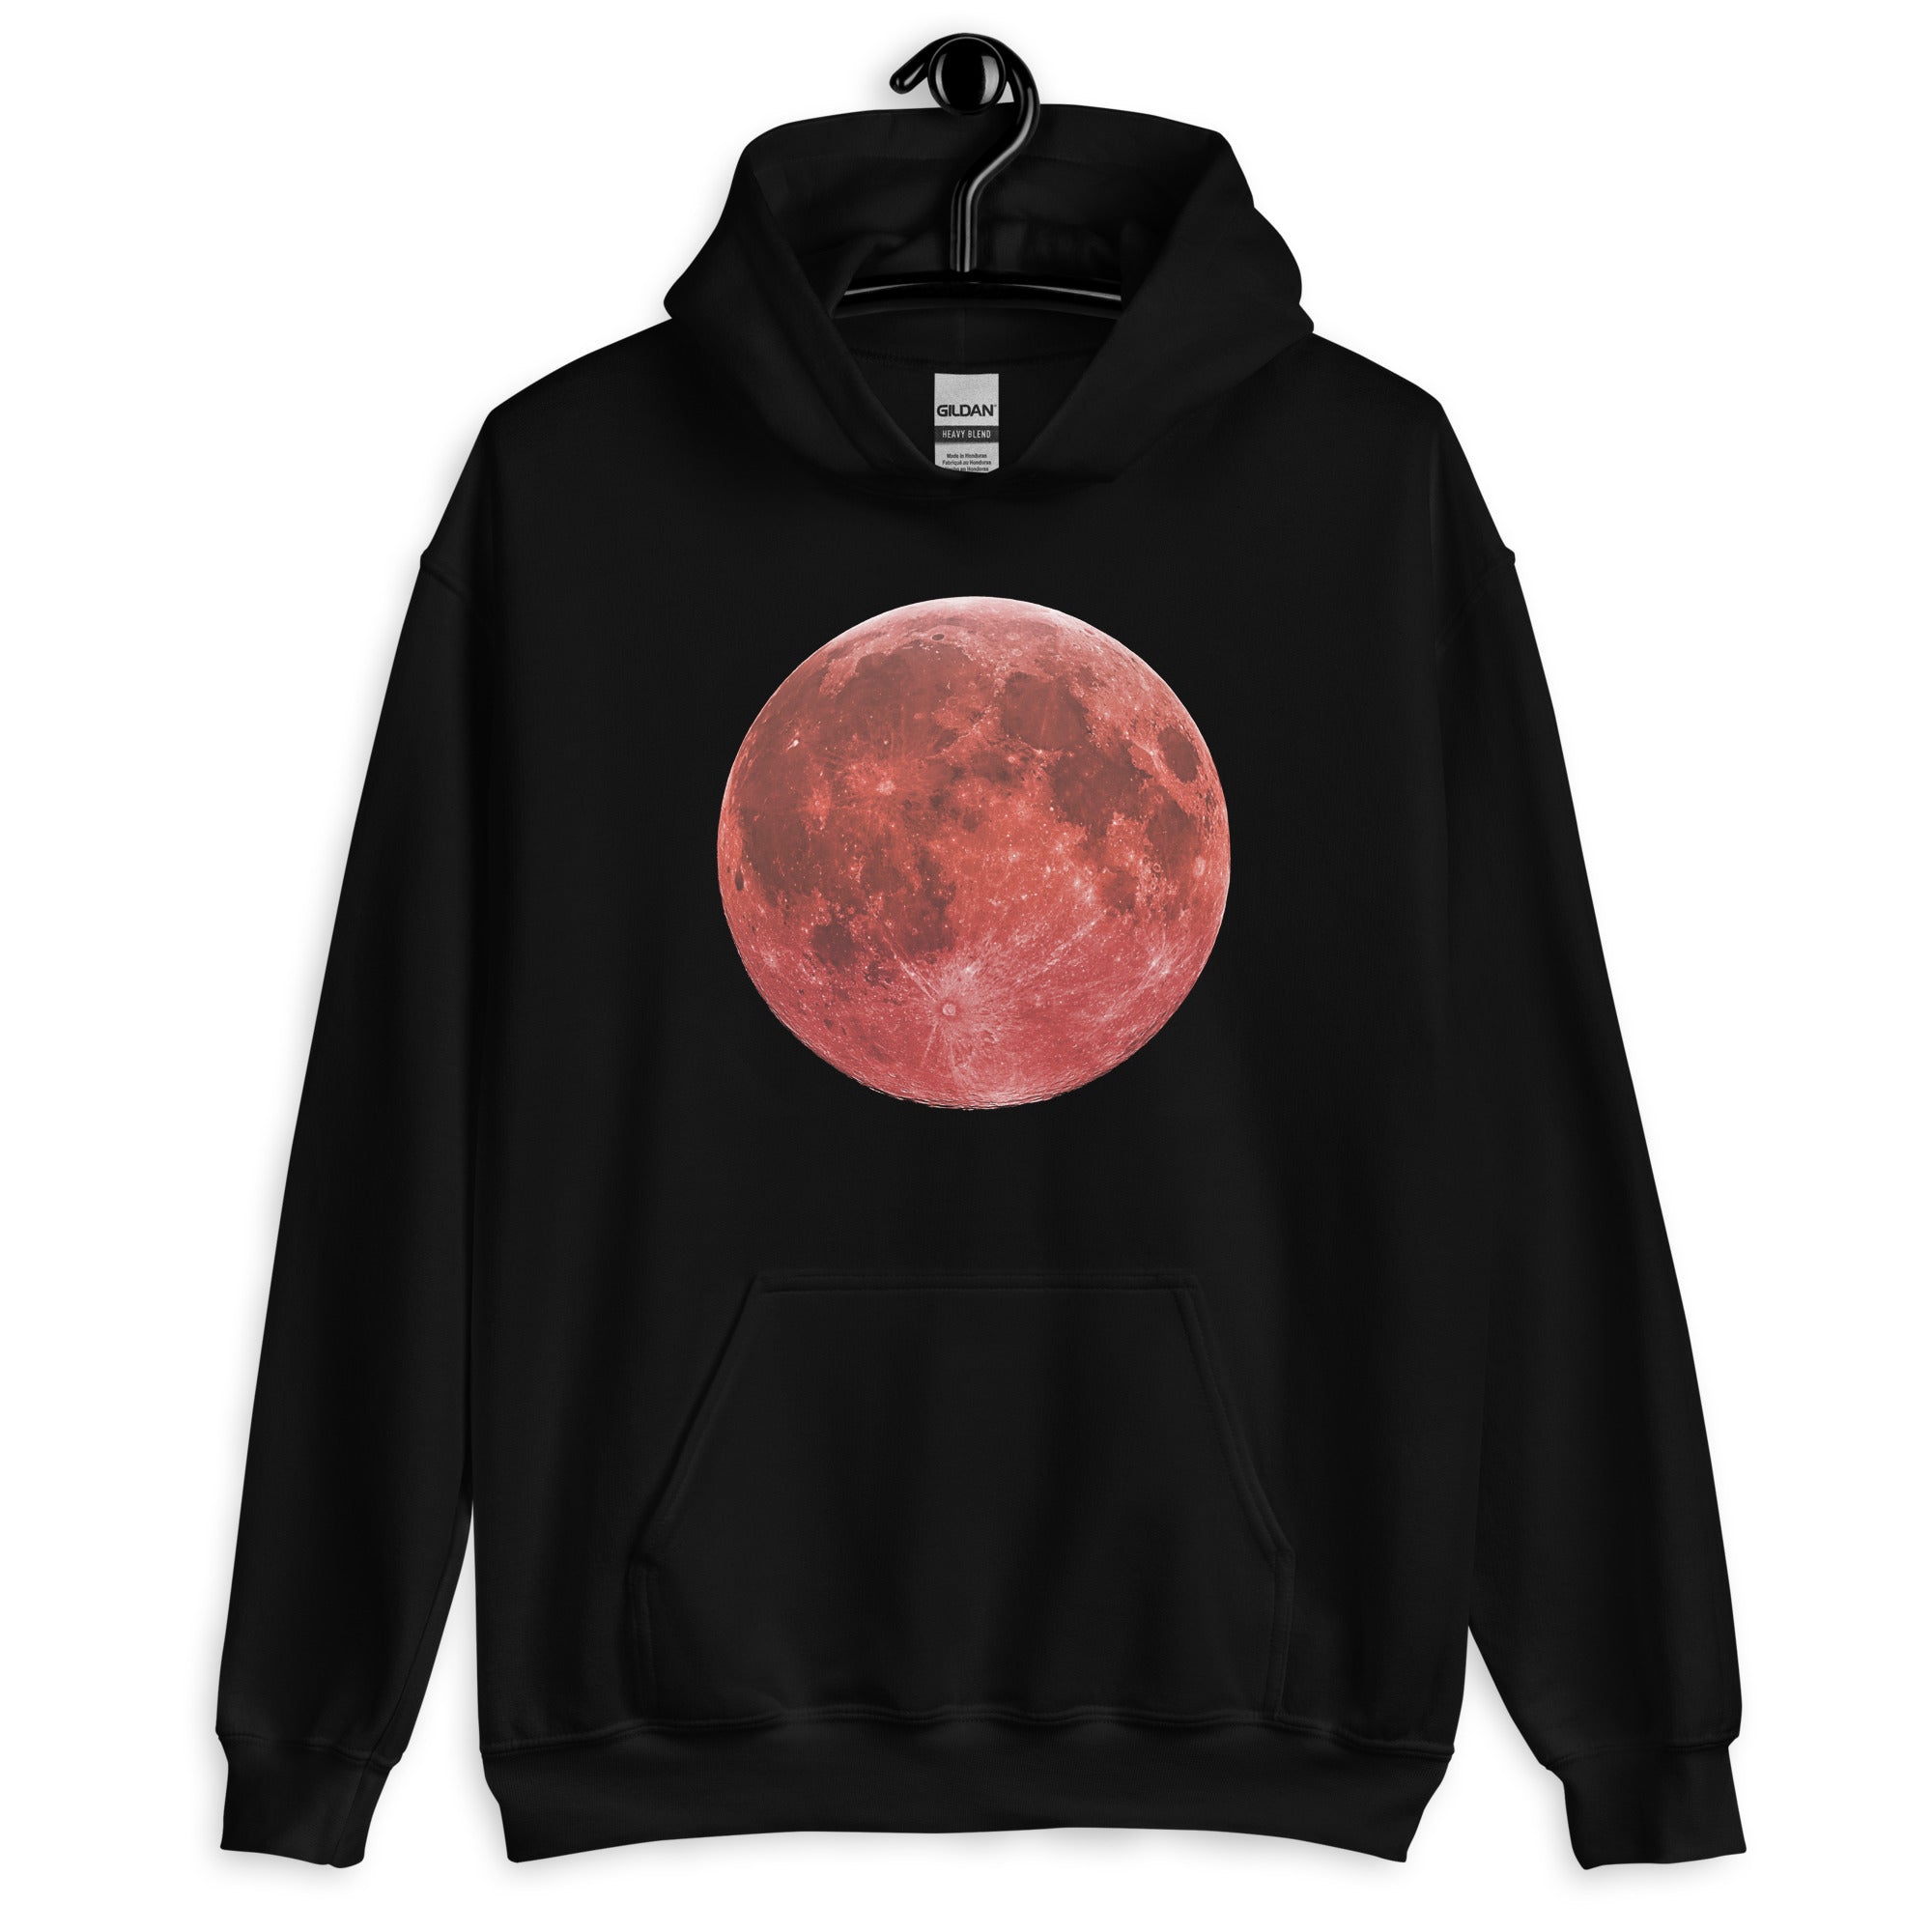 Blood Red Moon Total Lunar Eclipse Unisex Hoodie Sweatshirt - Edge of Life Designs